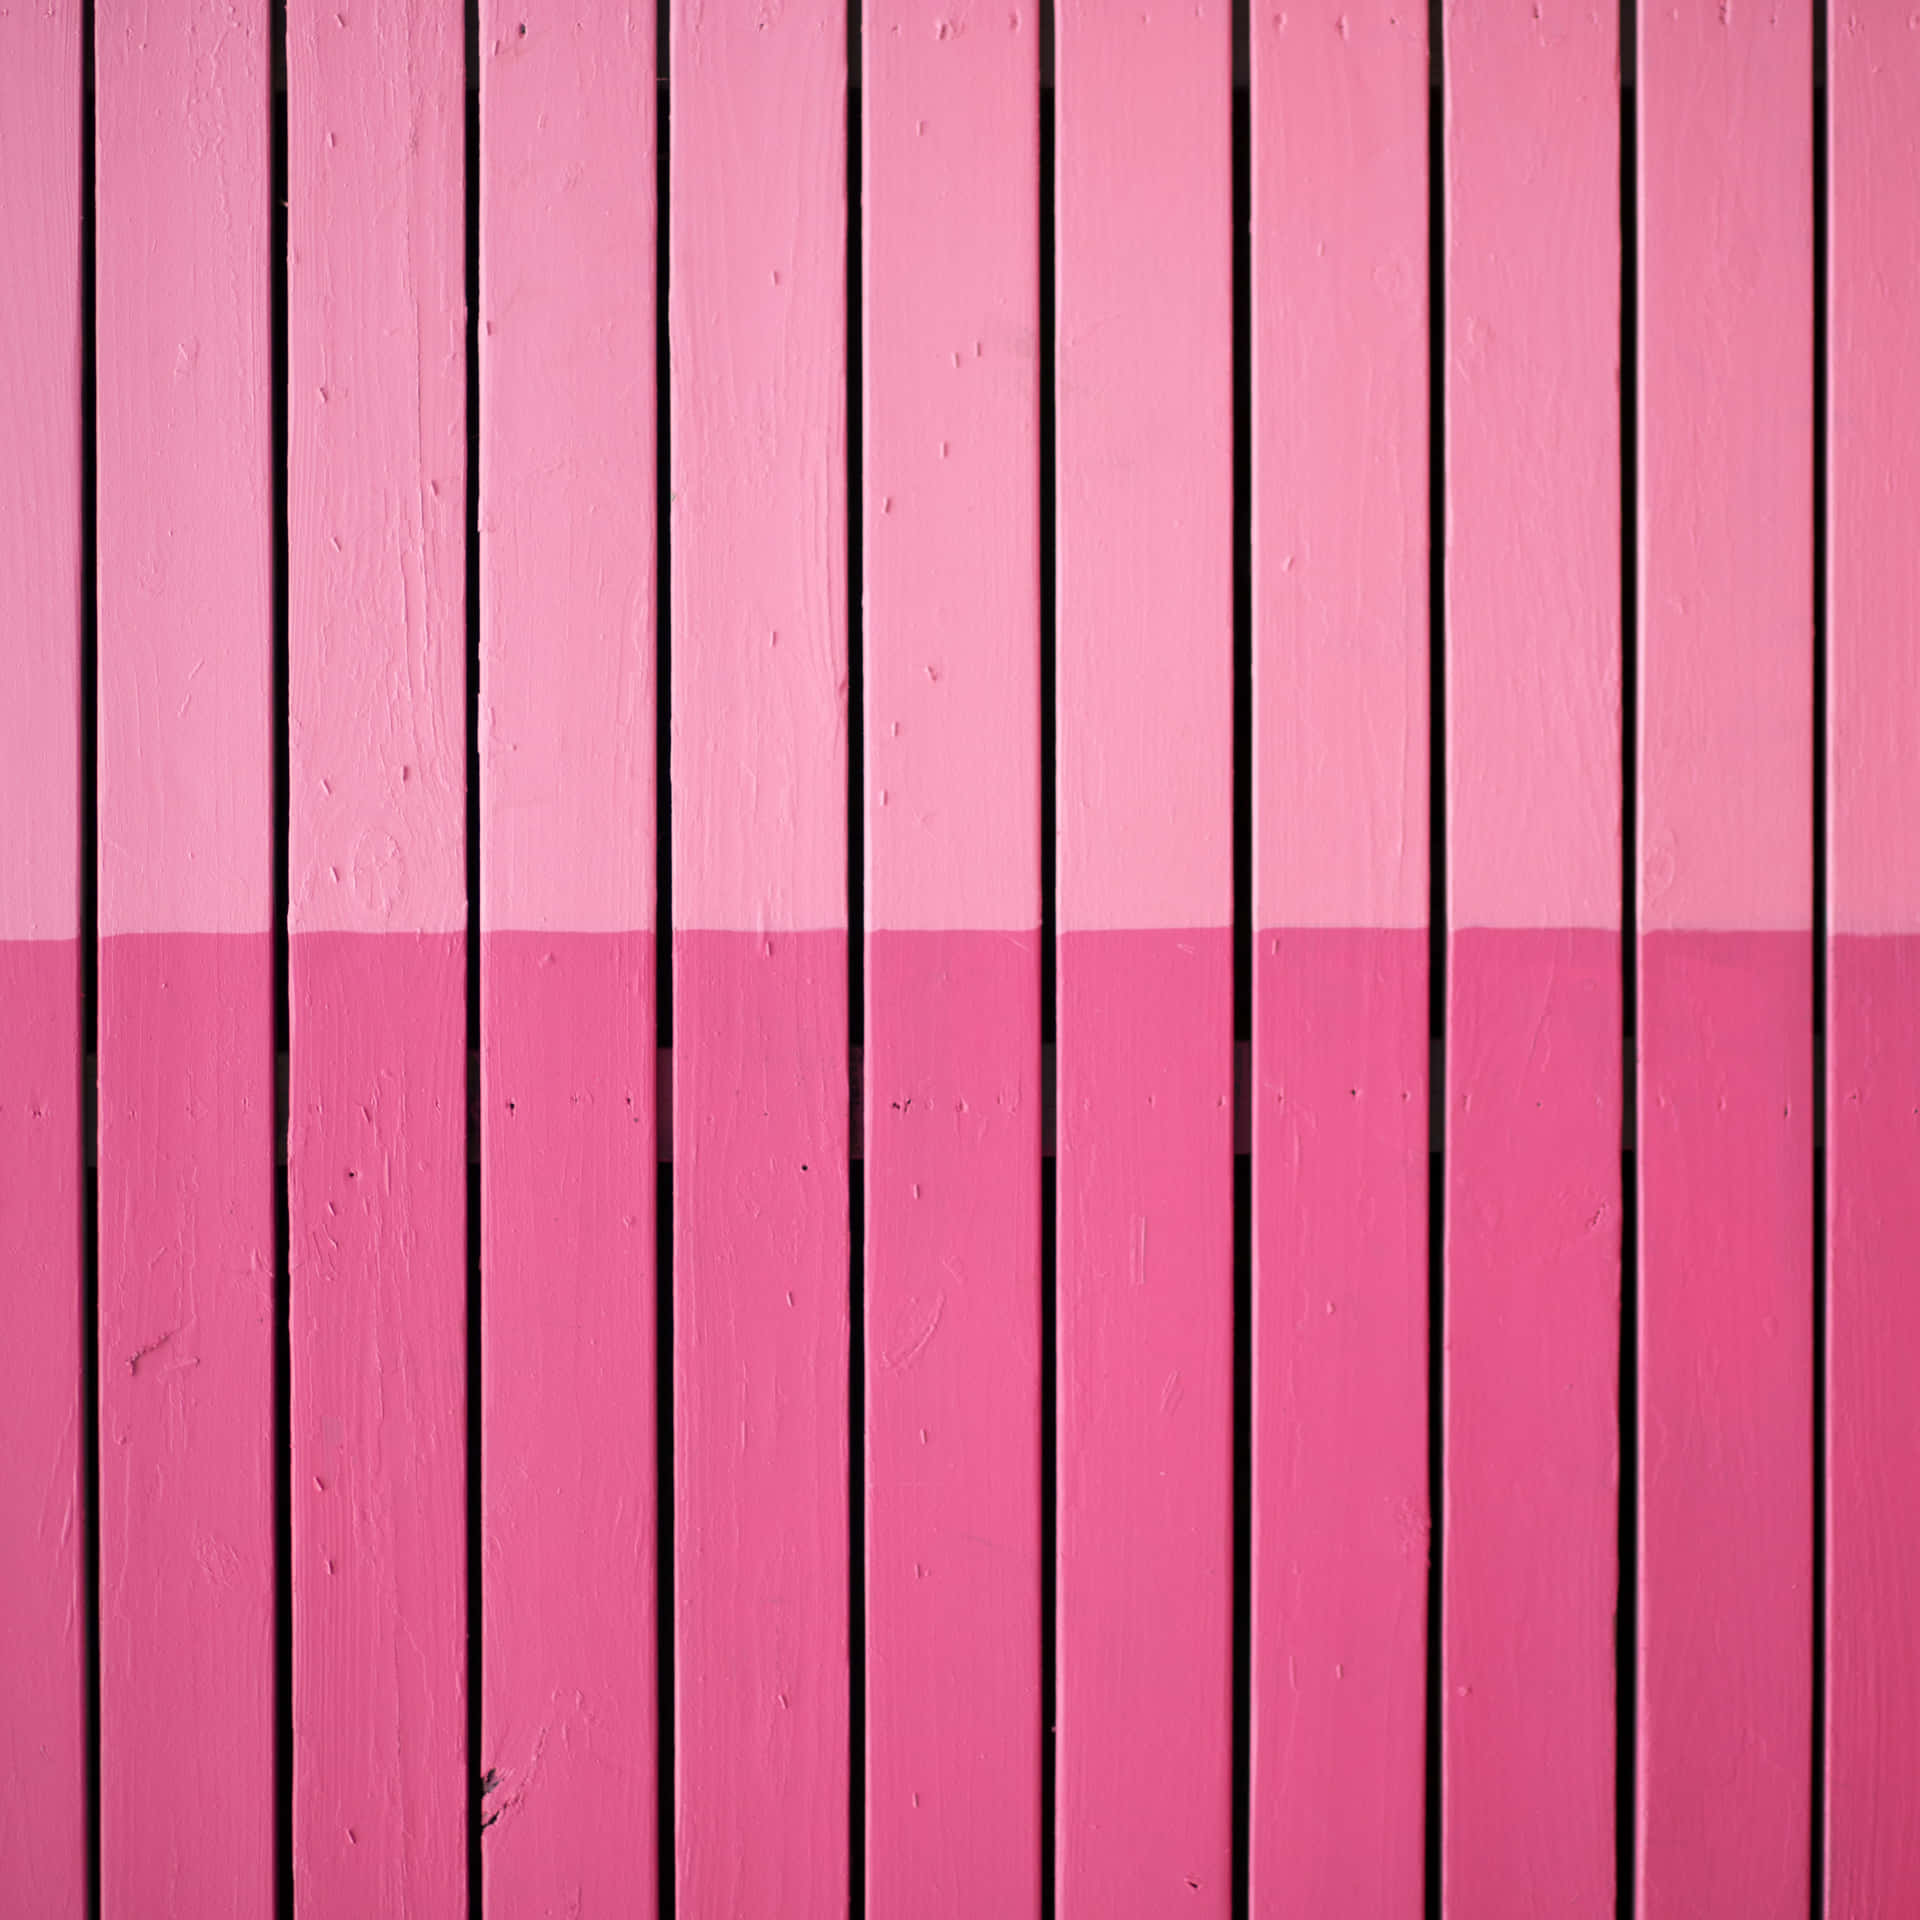 Einleuchtend Pinkes Ipad Sticht Auf Einem Weißen Hintergrund Hervor. Wallpaper